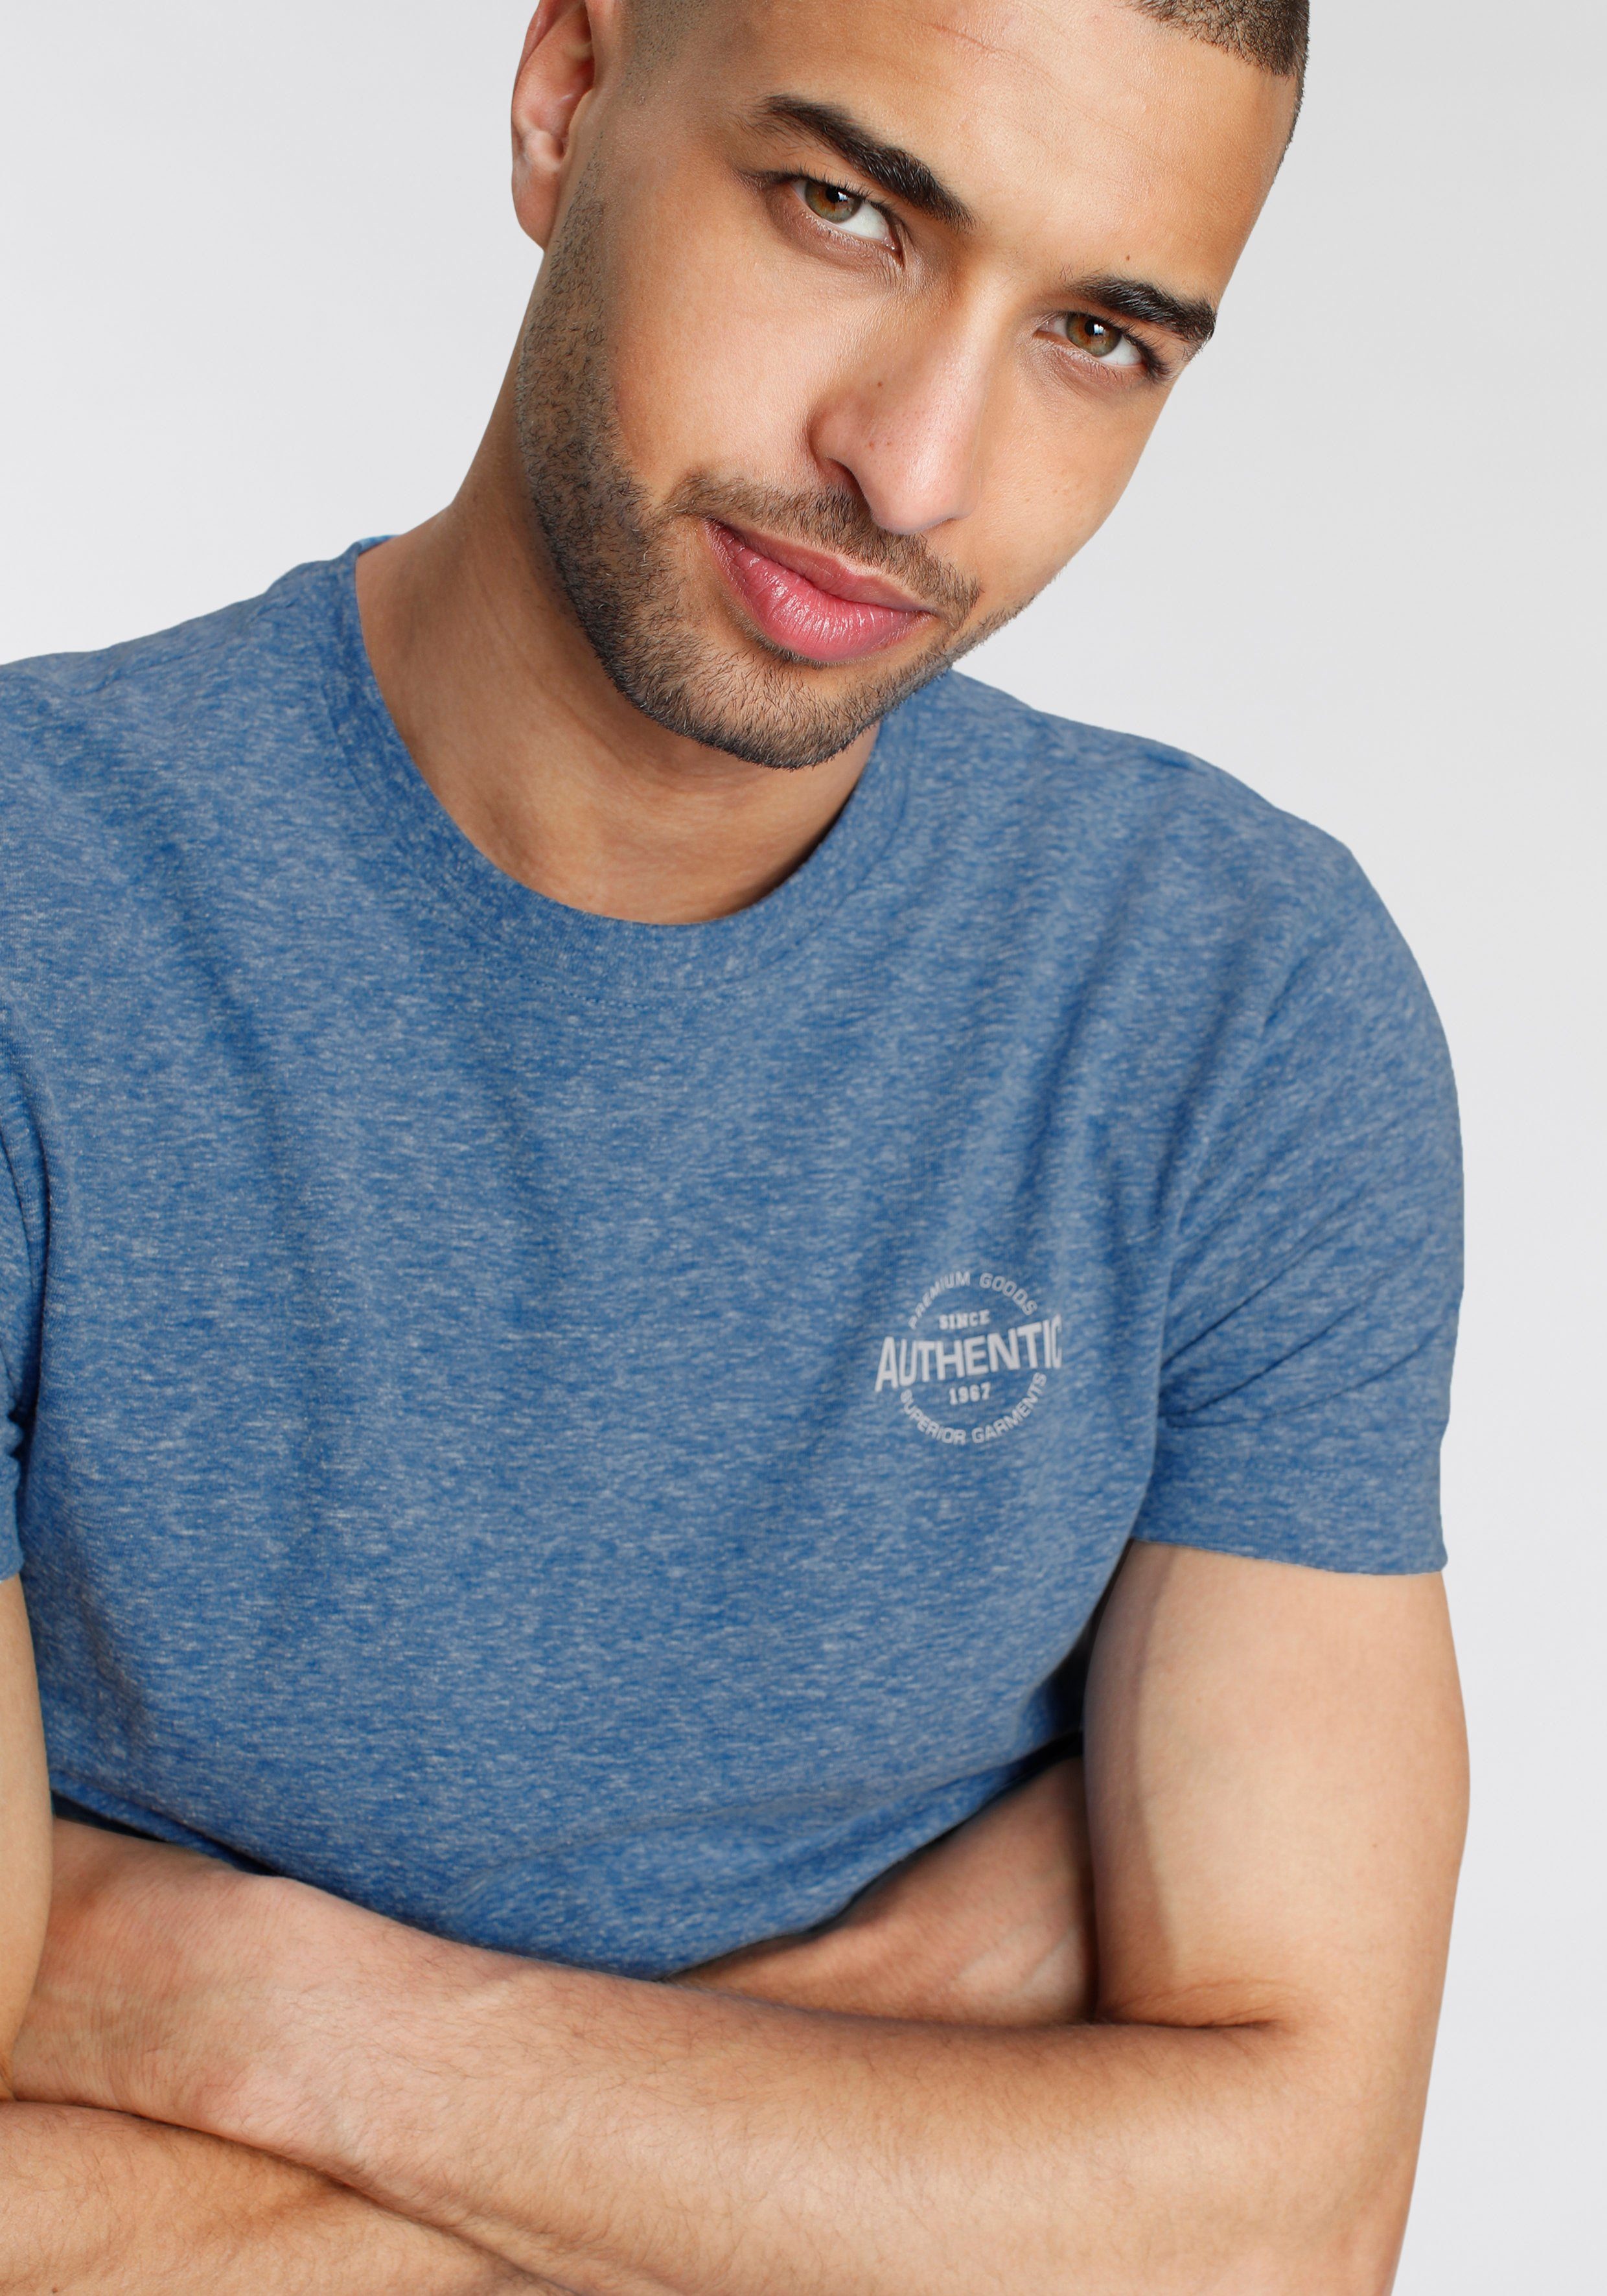 AJC T-Shirt in Logo besonderer und blau Melange Print meliert mit Optik